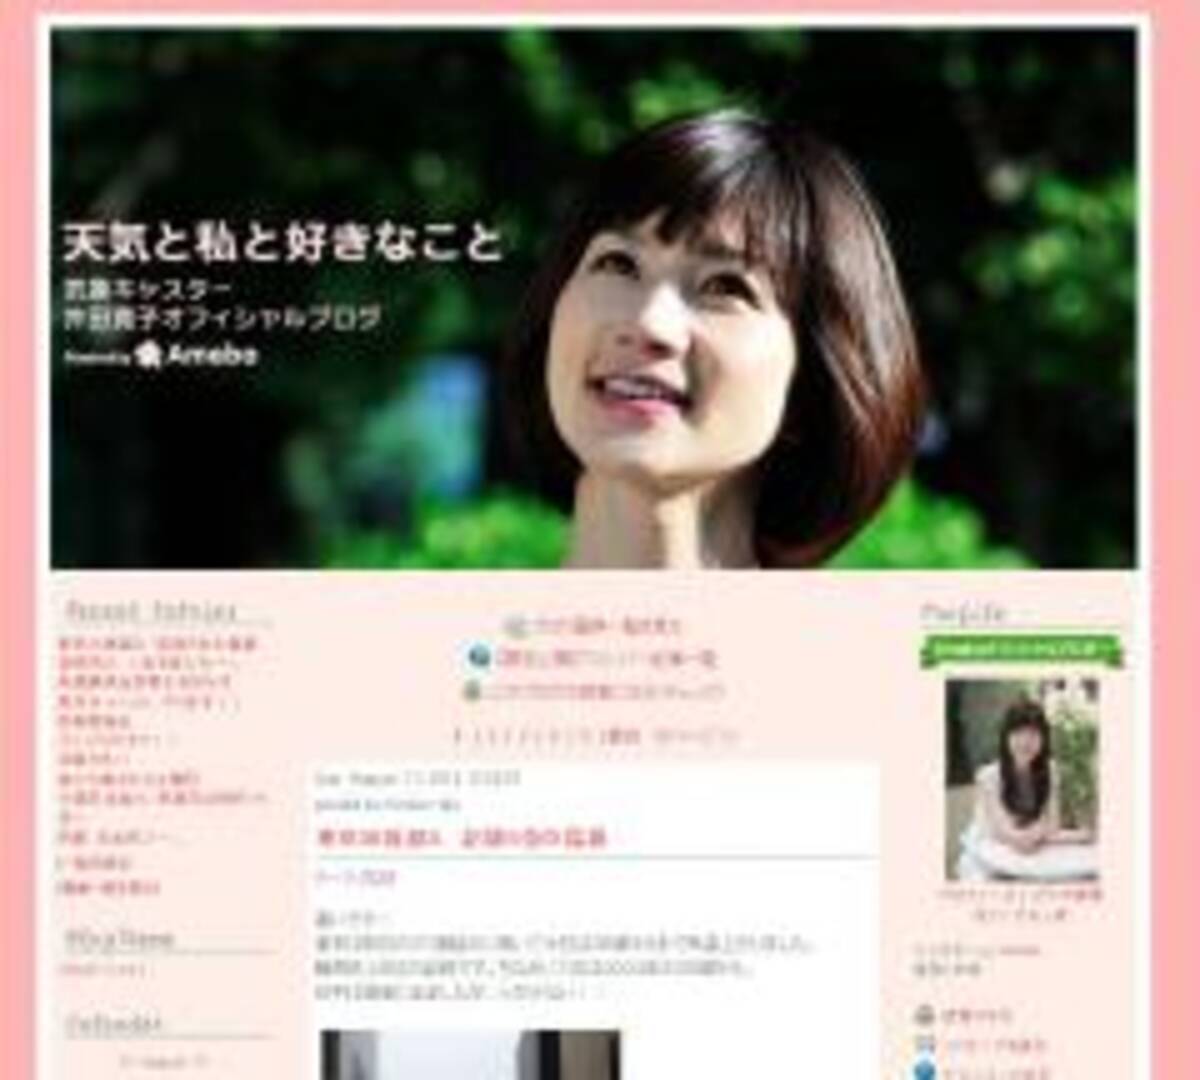 レベル高いnhkの女性気象予報士 ニュースウォッチ9 の井田寛子キャスターも根強い人気 13年8月23日 エキサイトニュース